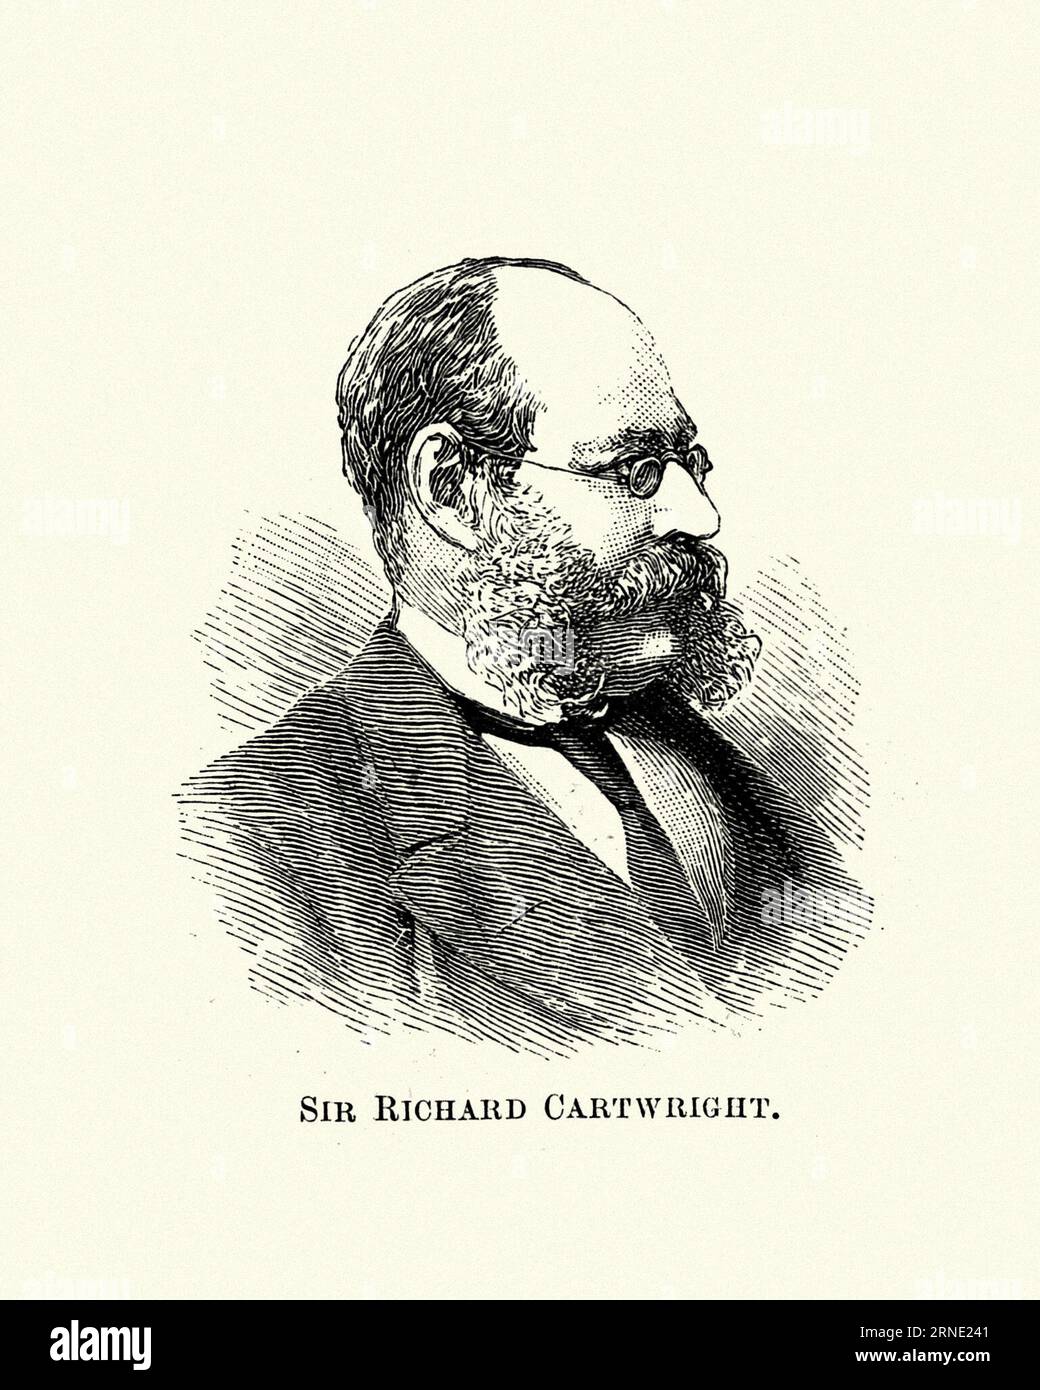 Sir Richard John Cartwright GCMG PC era un uomo d'affari e politico canadese. Cartwright fu uno dei politici federali più illustri del Canada tra la fine del XIX secolo e l'inizio del XX. Foto Stock